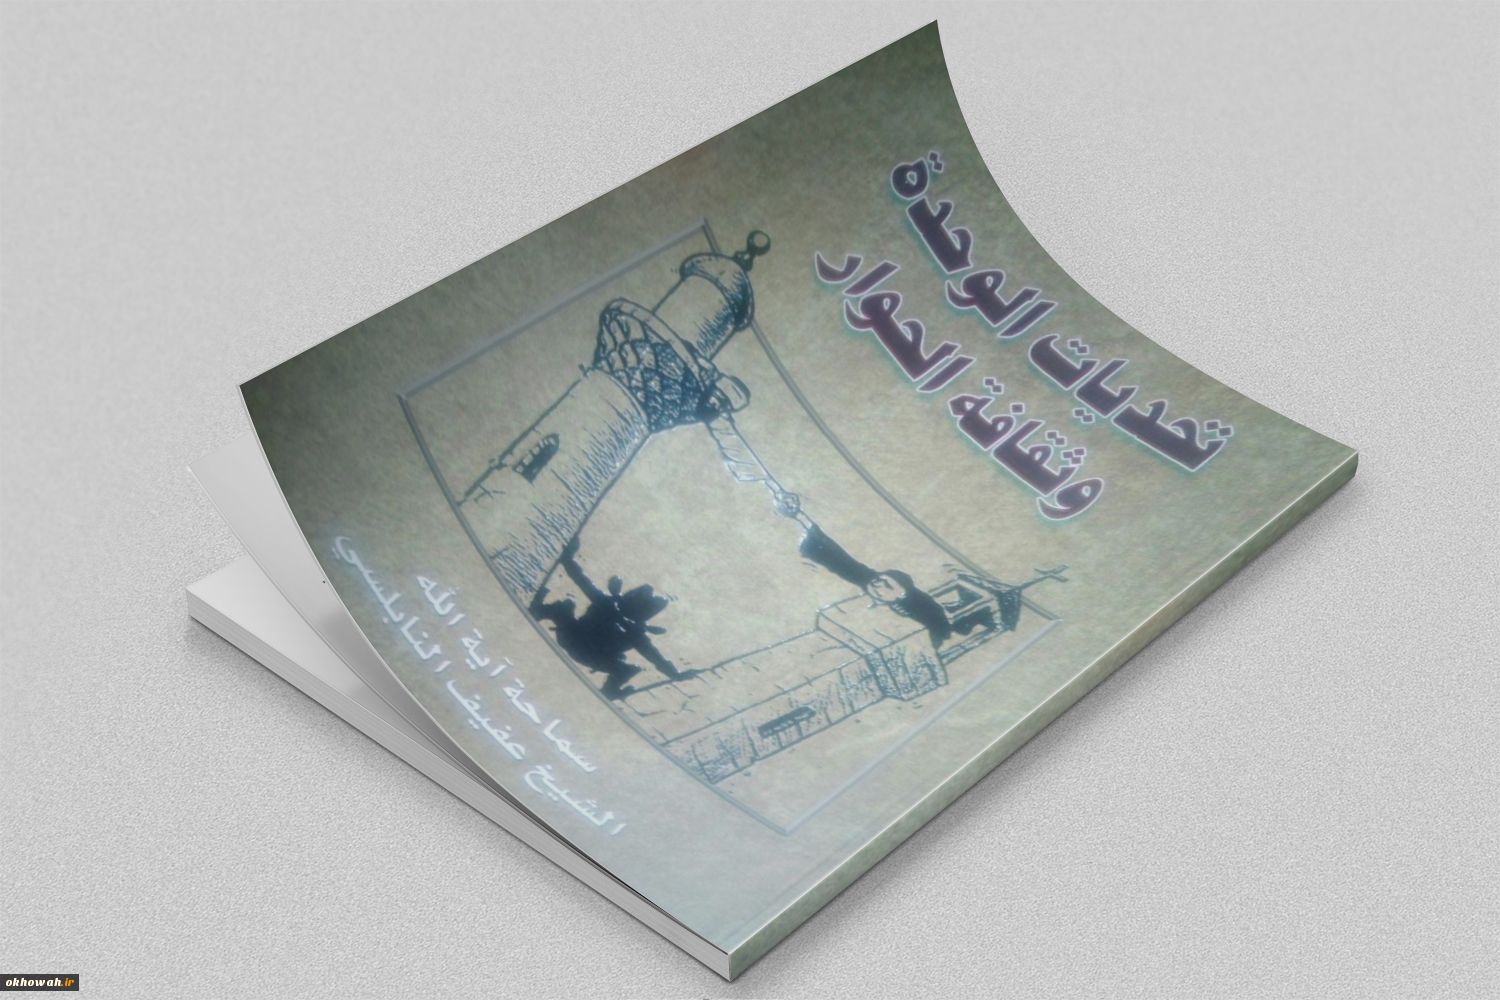 معرفی کتاب تحدیات الوحده و ثقافه الحوار

چالش های اتحاد و فرهنگ گفتگو